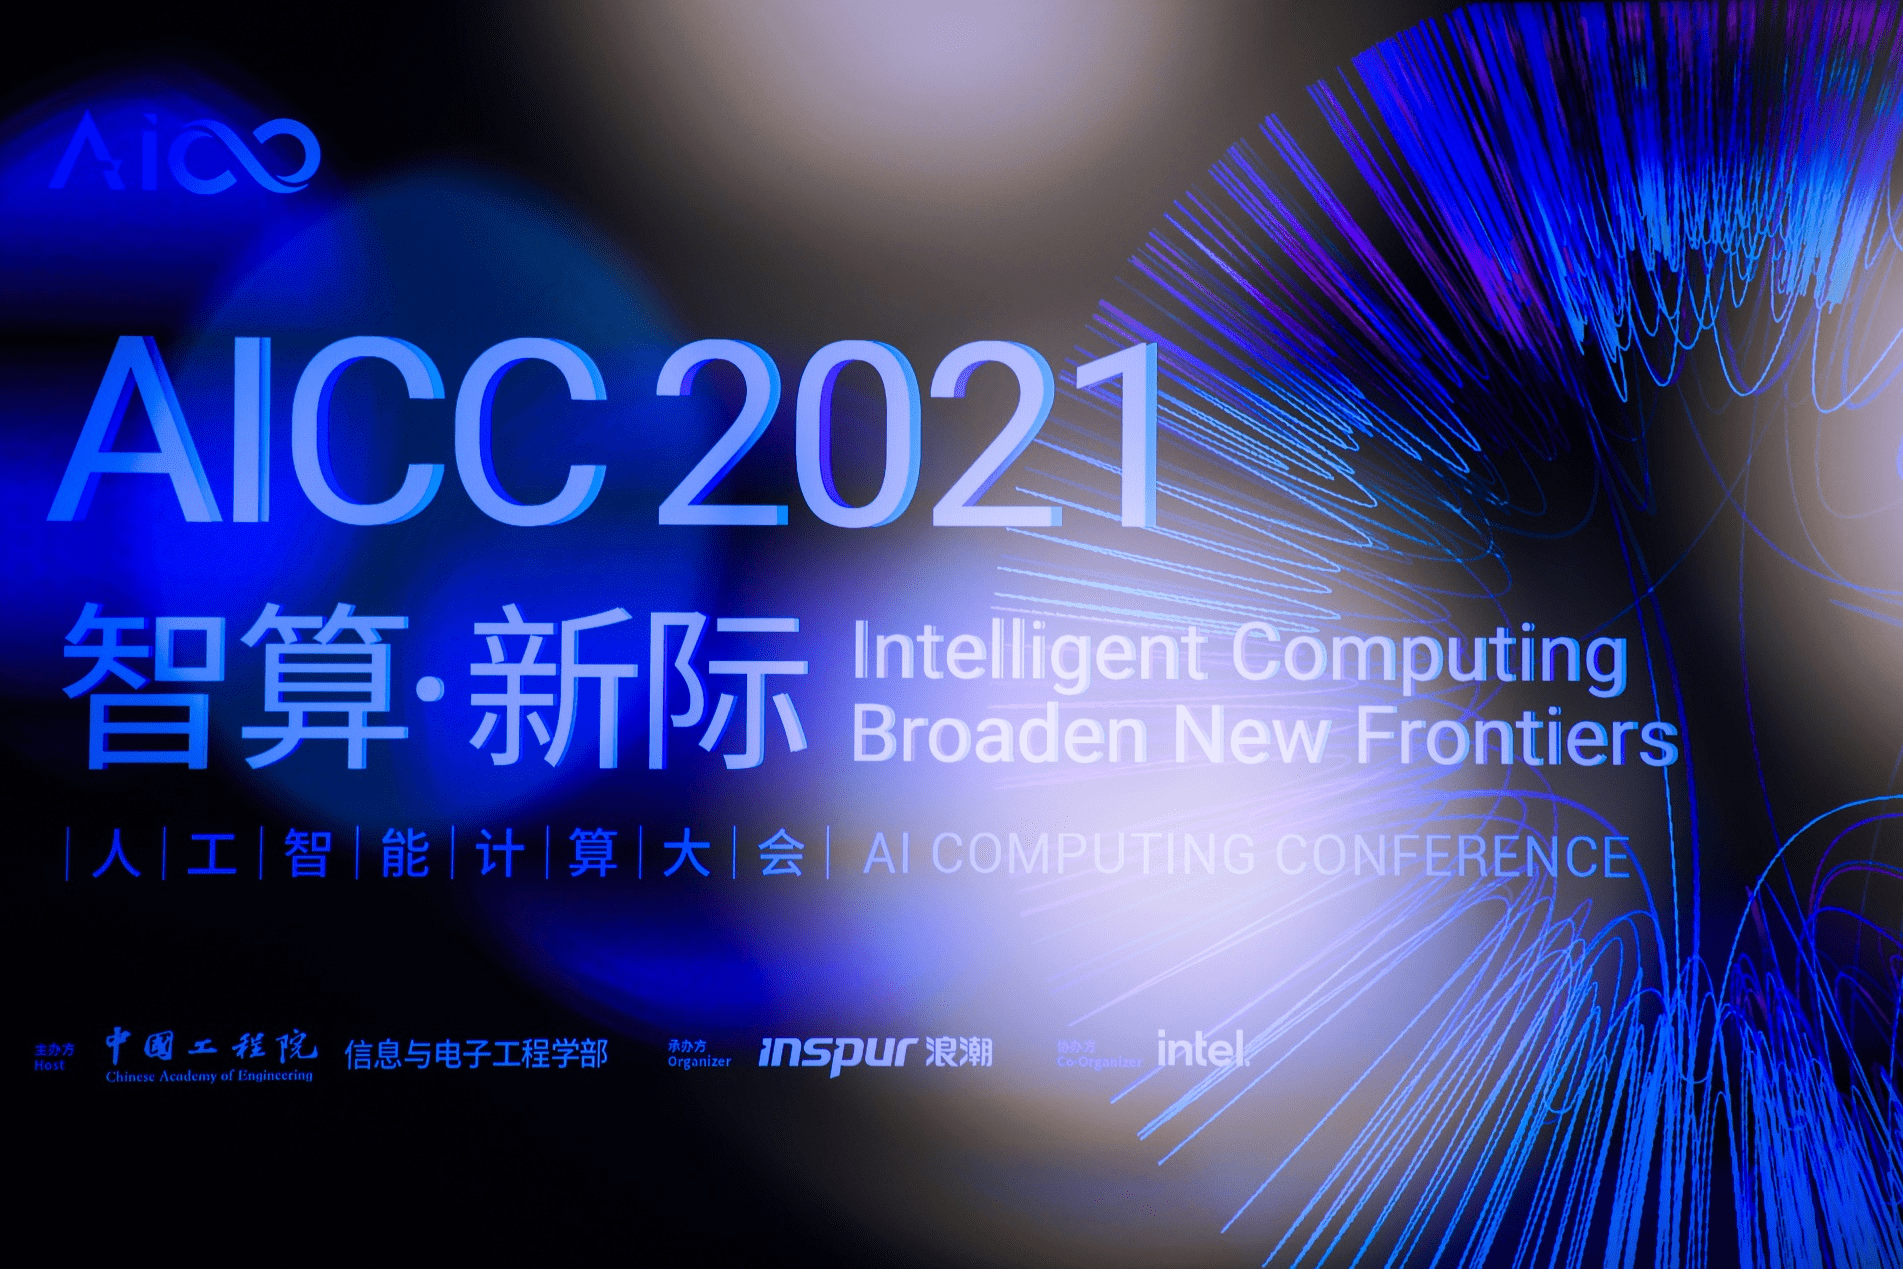 鲸灵集团CEO鬼谷与中国工程院院士同台演讲 AI力量探索电商新发展 